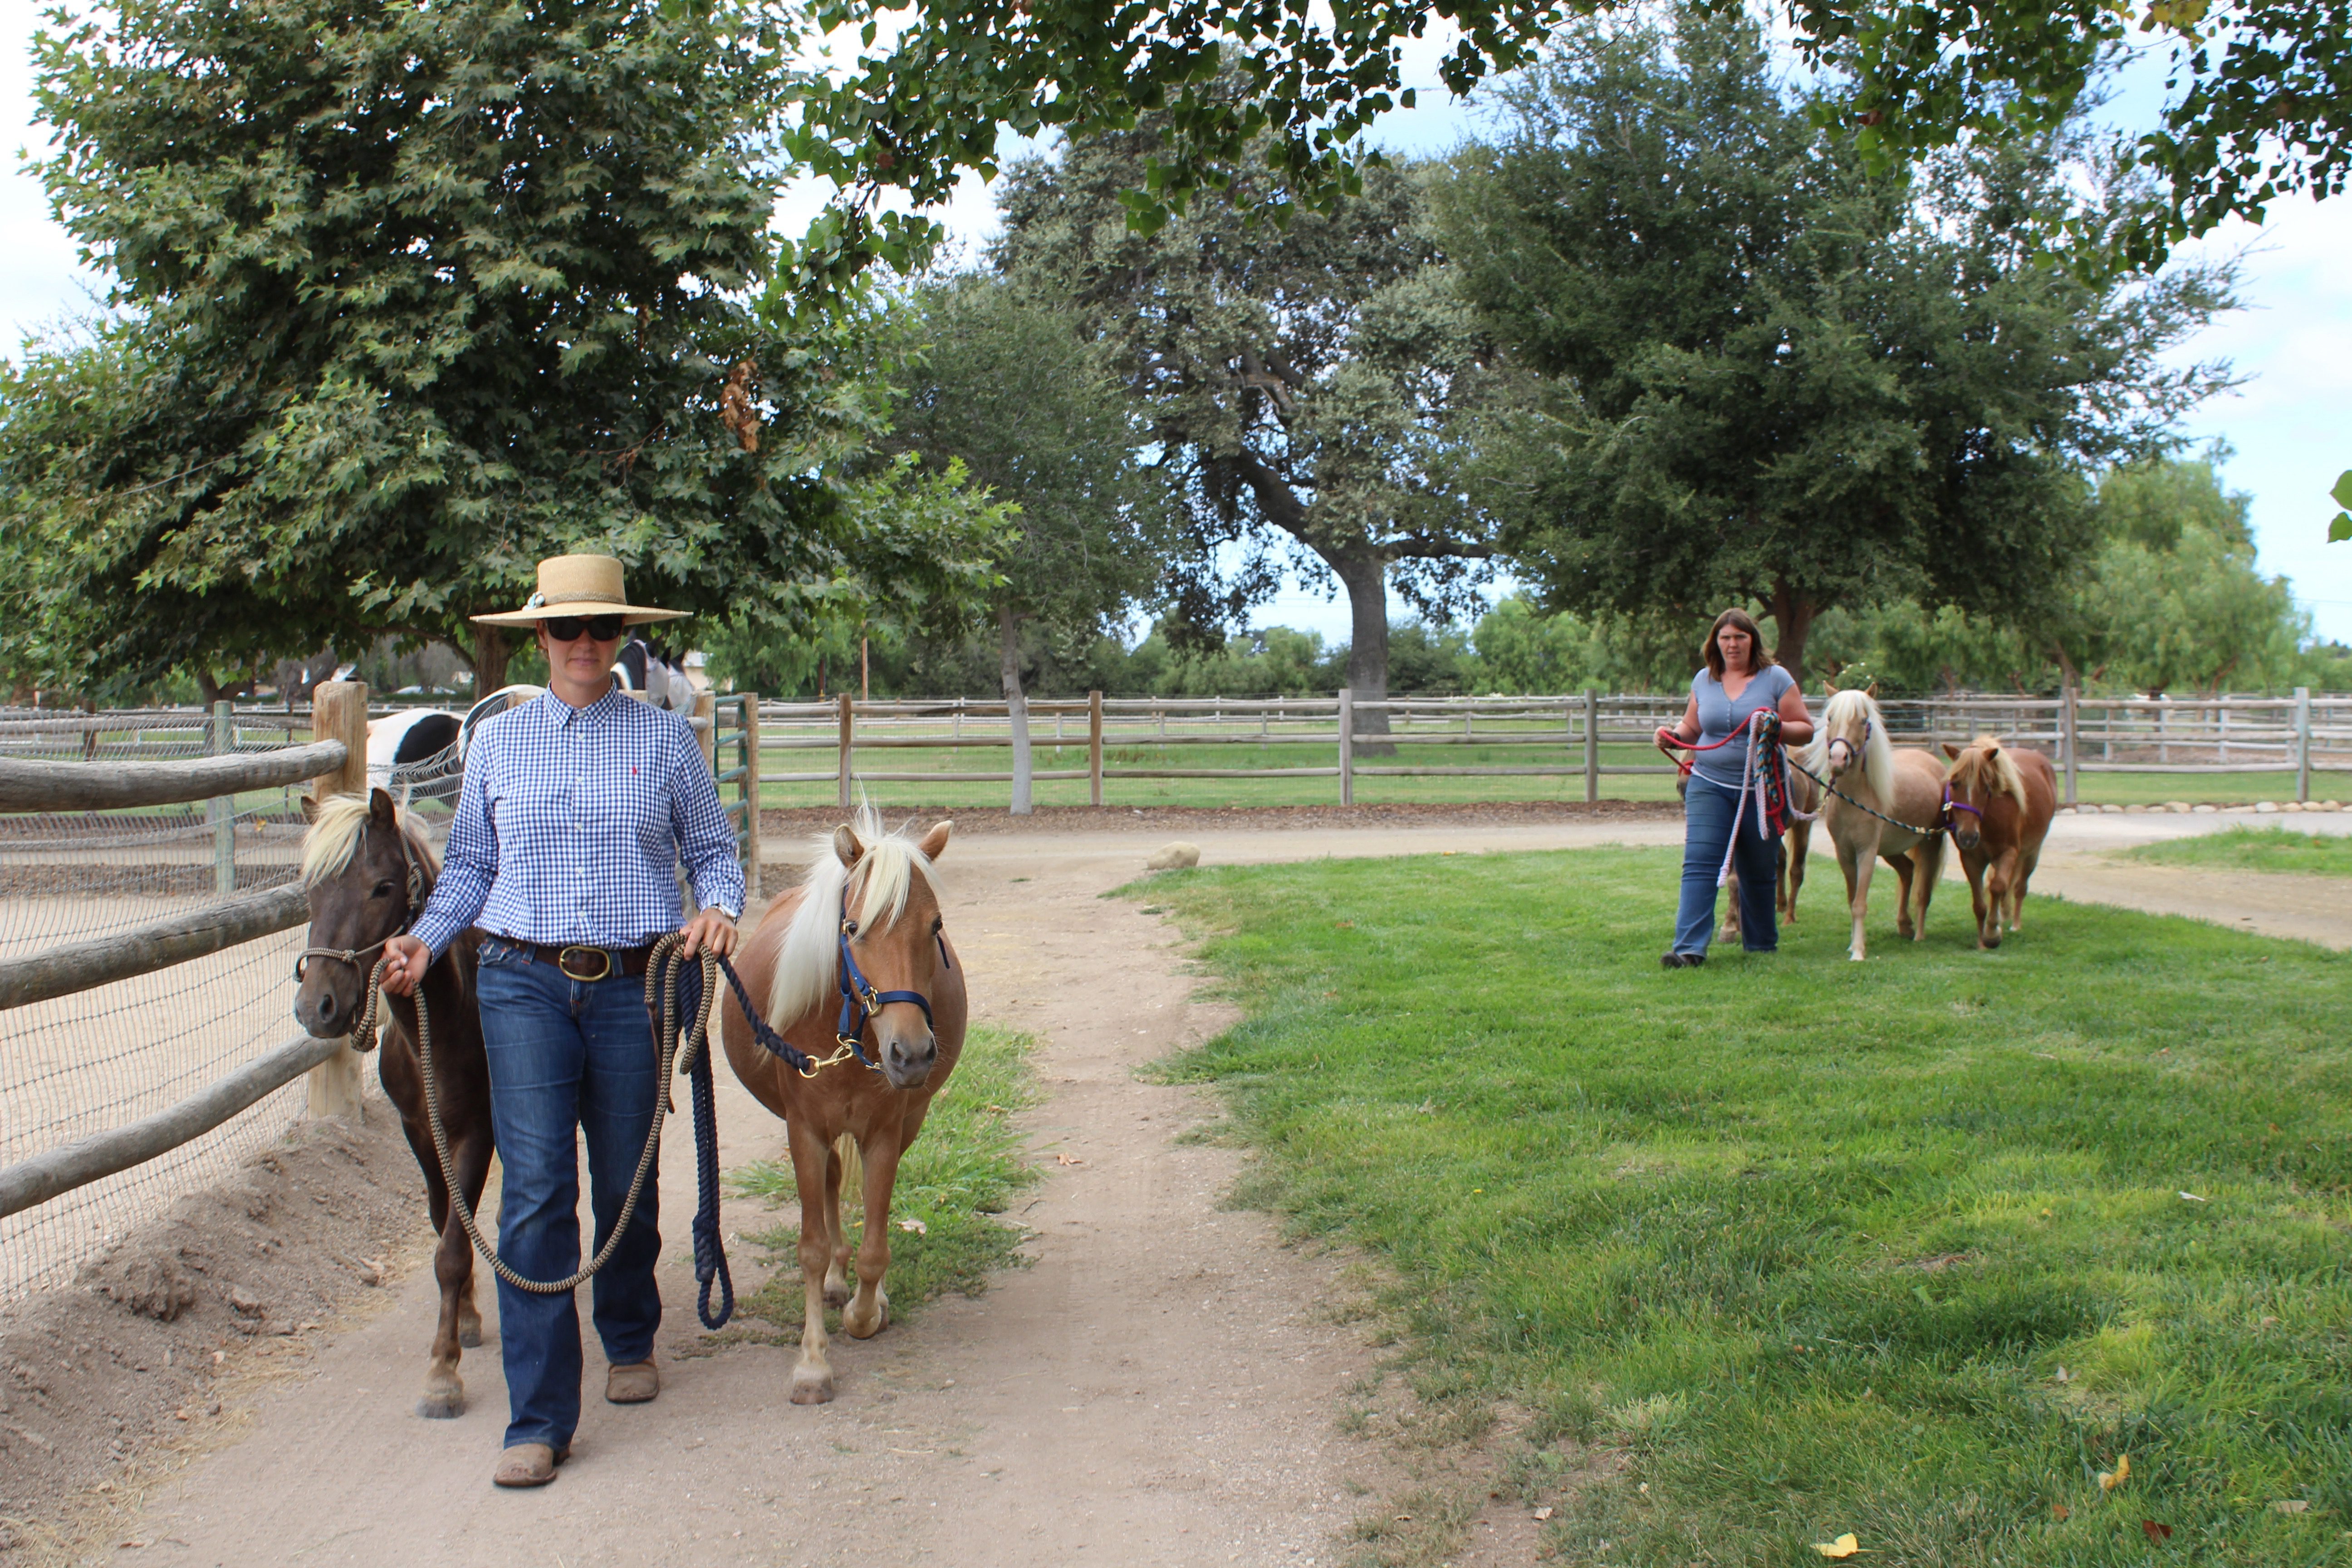 Local women rescue, train herd of miniature horses